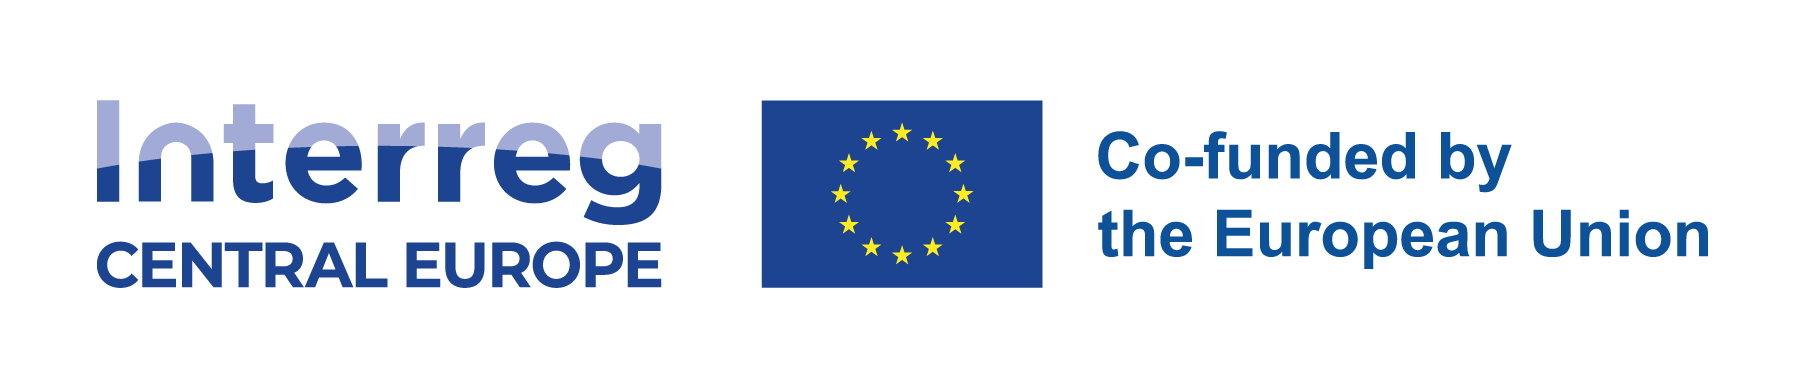 logotyp programu Interreg Europa Środkowa